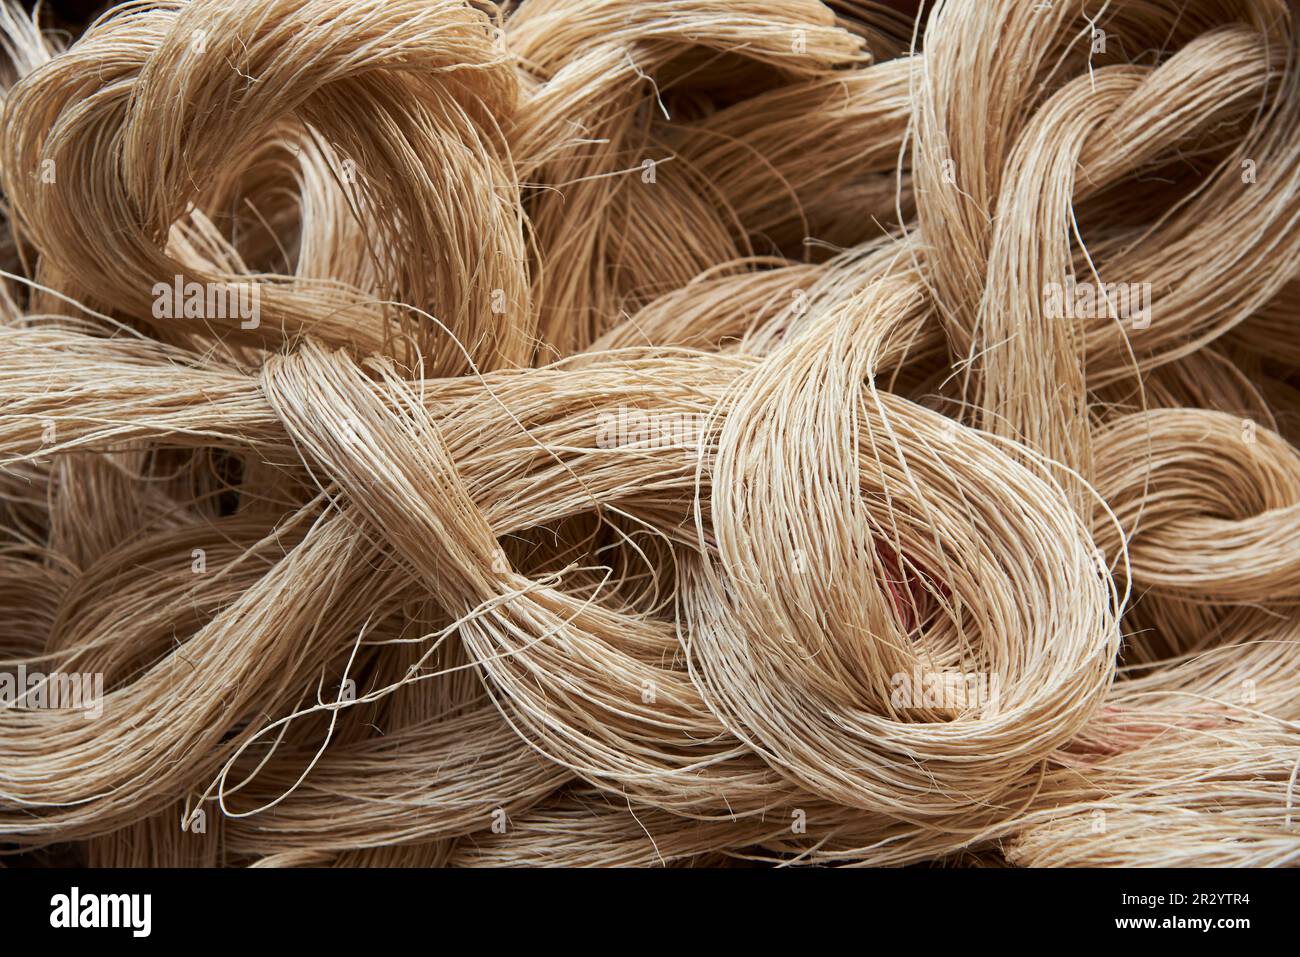 Fibra di fibra, un materiale vegetale tradizionalmente utilizzato in Colombia nella produzione di corde, sacchi e prodotti artigianali. Backgroun naturale testurizzato Foto Stock